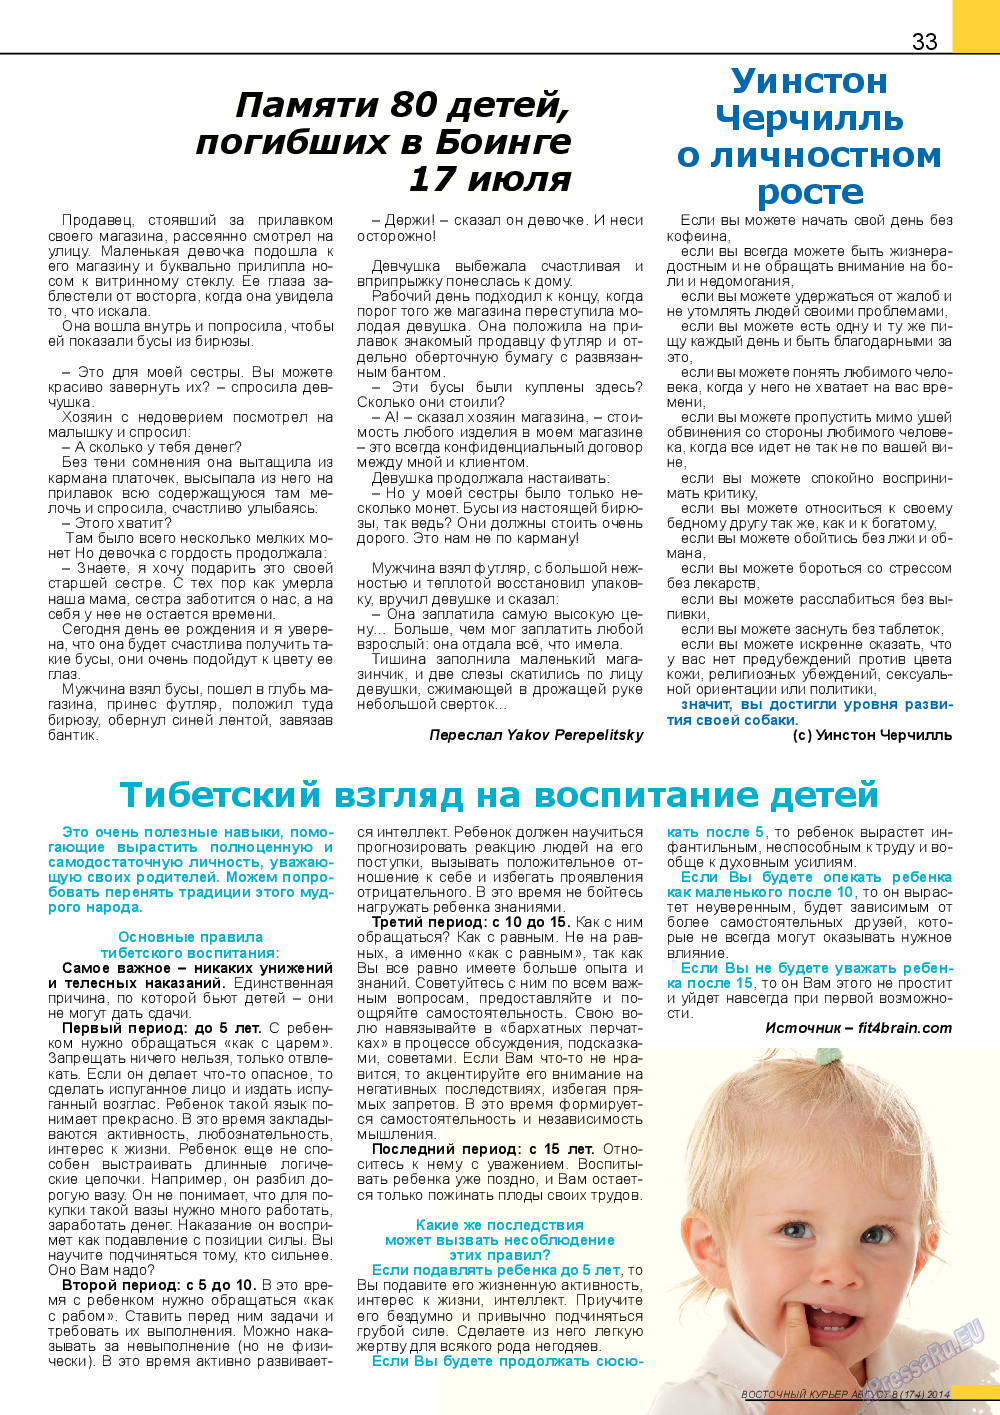 Восточный курьер (журнал). 2014 год, номер 8, стр. 33